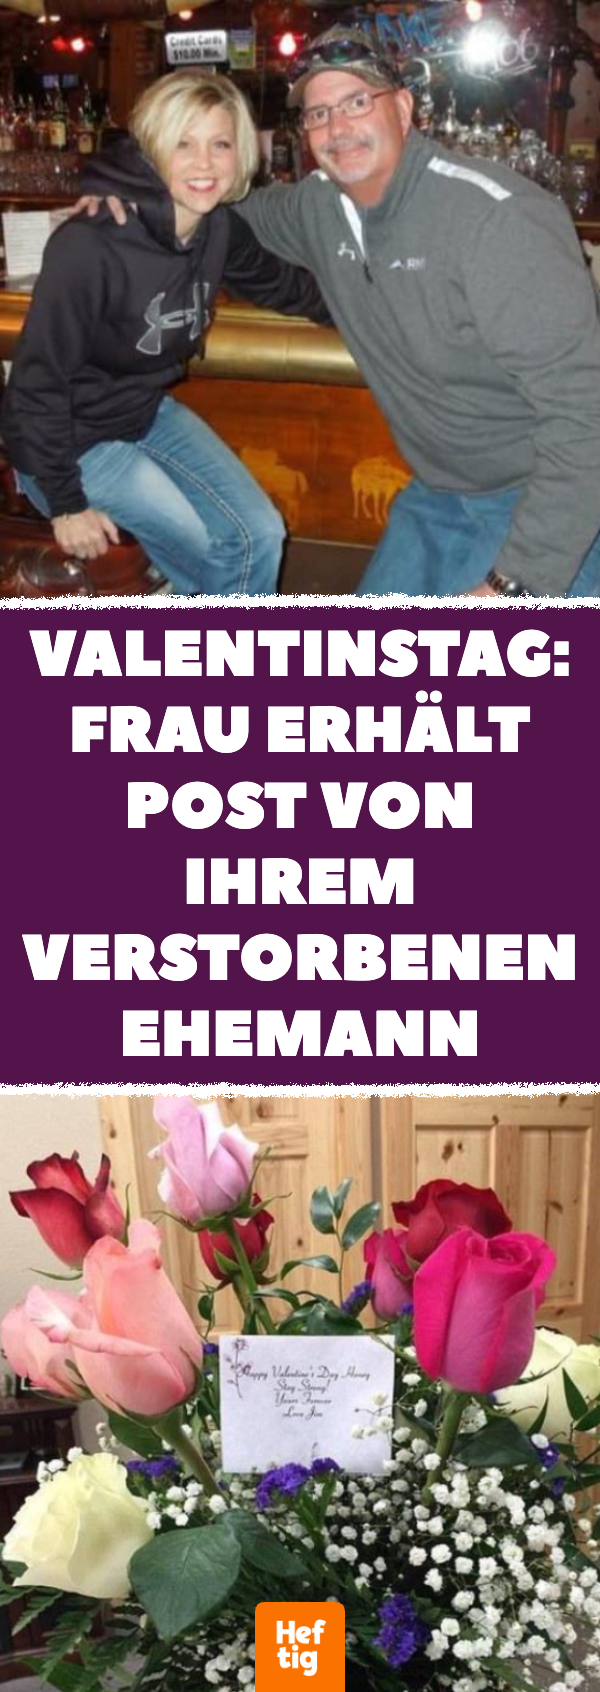 Valentinstag: Frau erhält Post von verstorbenem Ehemann